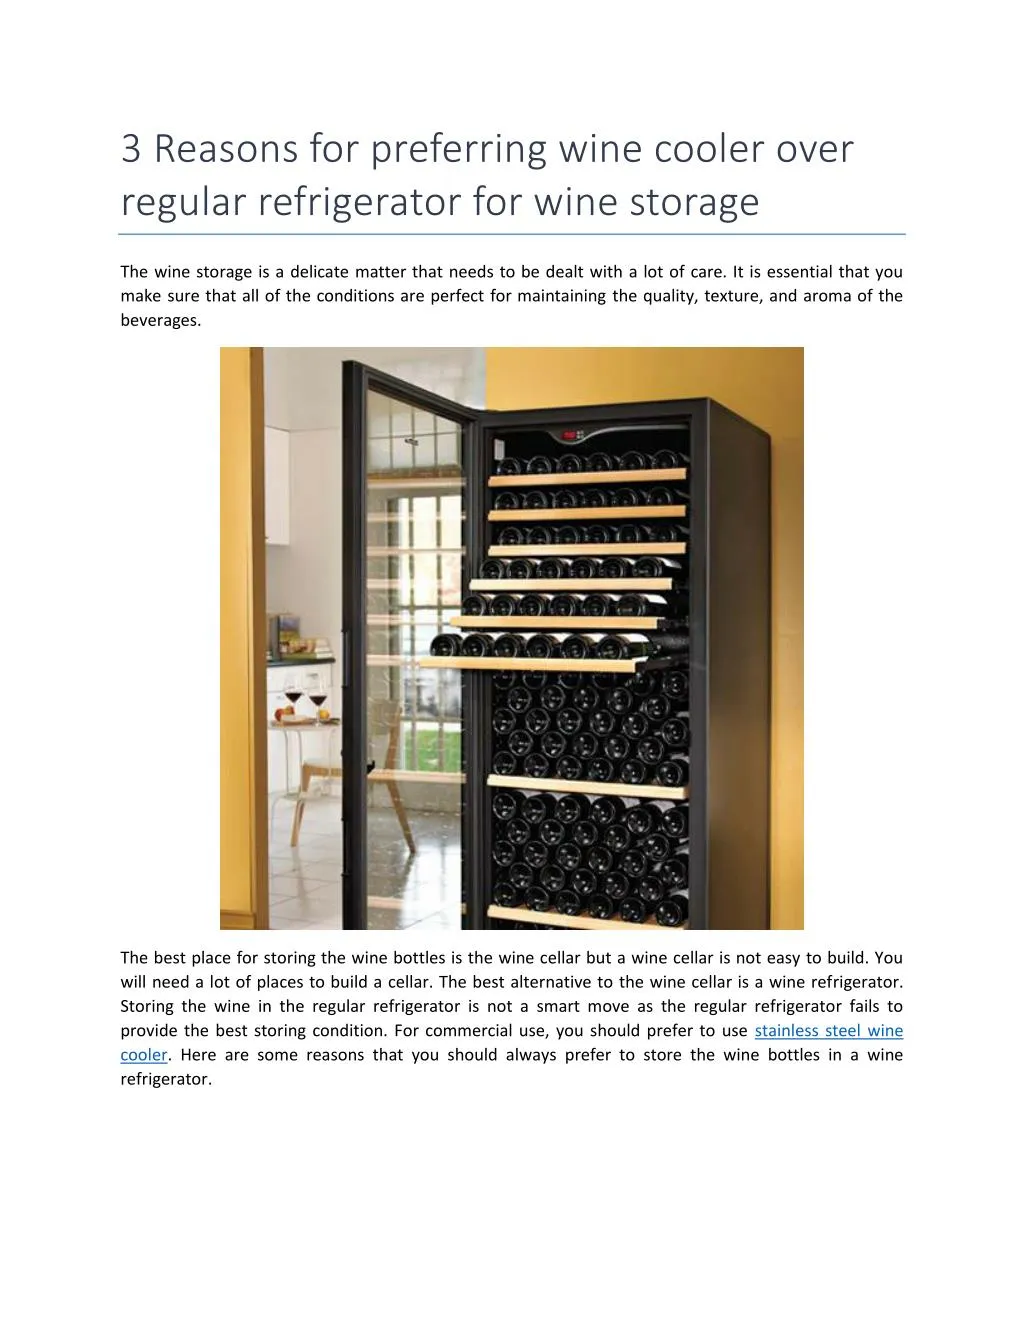 3 reasons for preferring wine cooler over regular